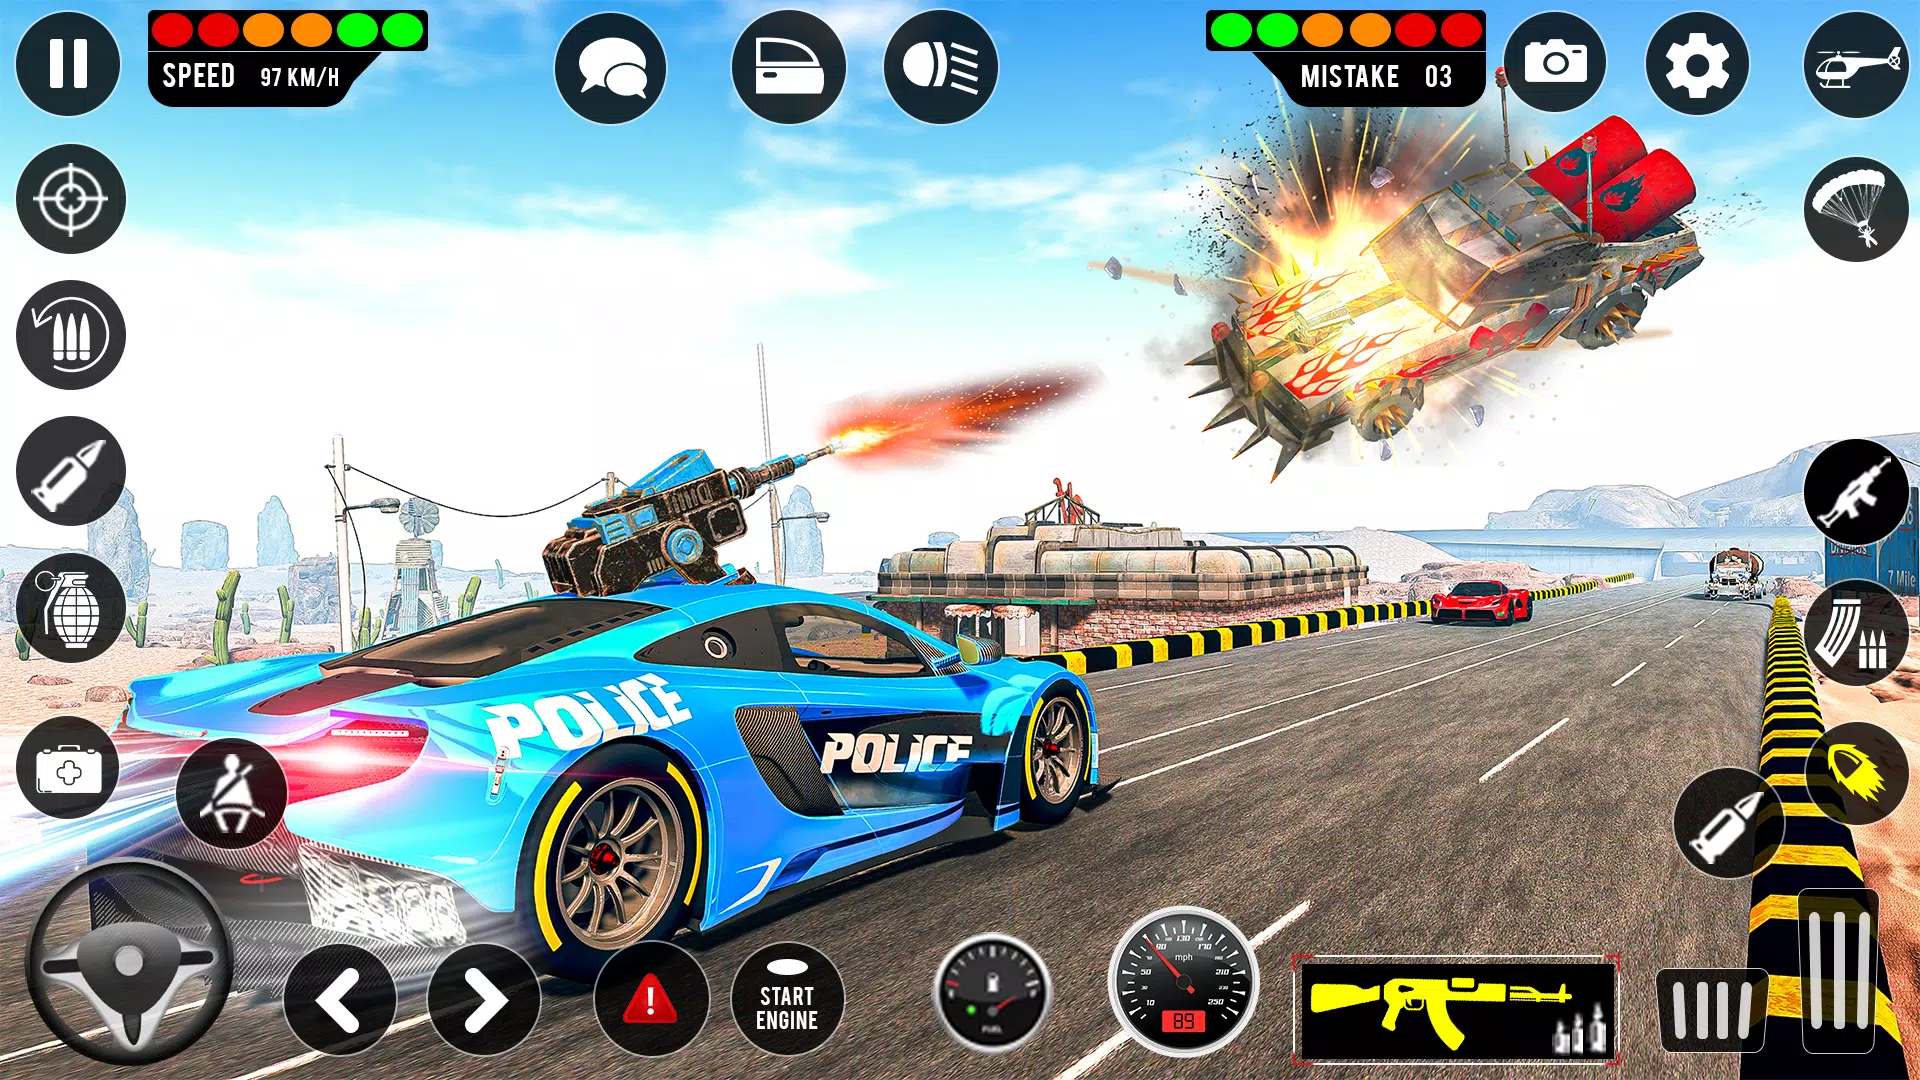 Baixar Perseguição carro de polícia 1.0 Android - Download APK Grátis